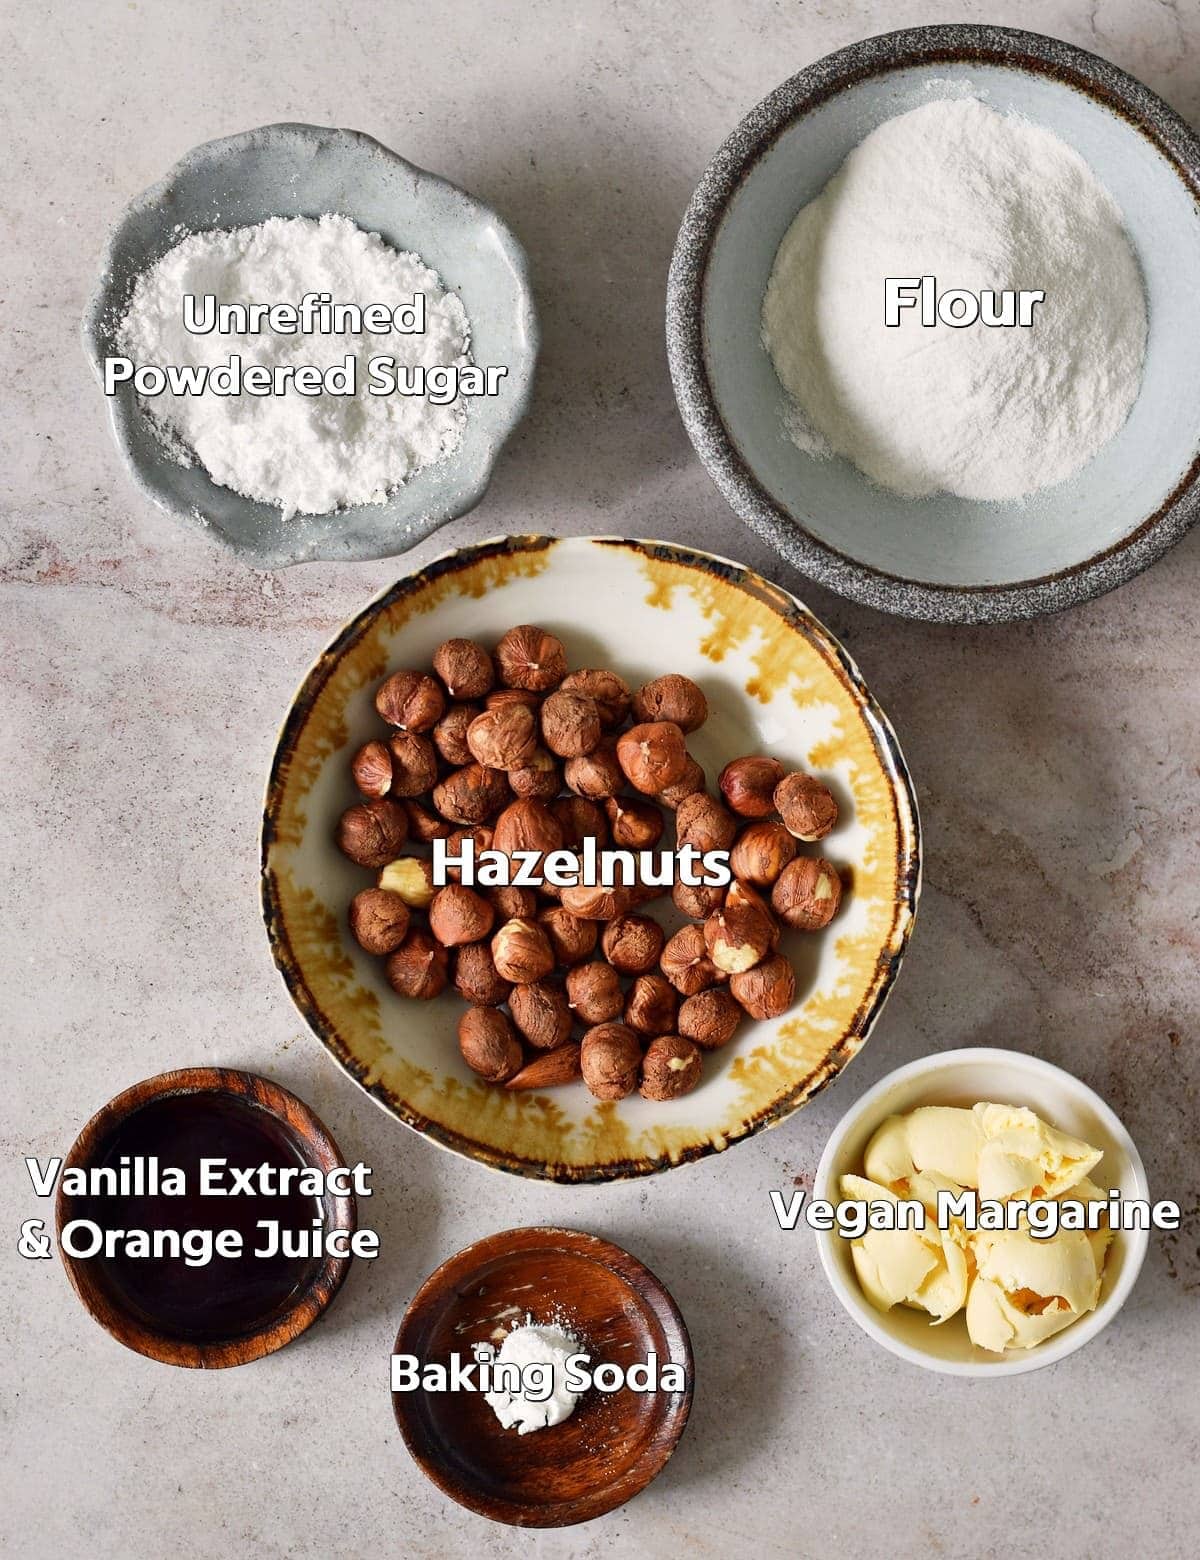 Ingredients for Hazelnut Cookies